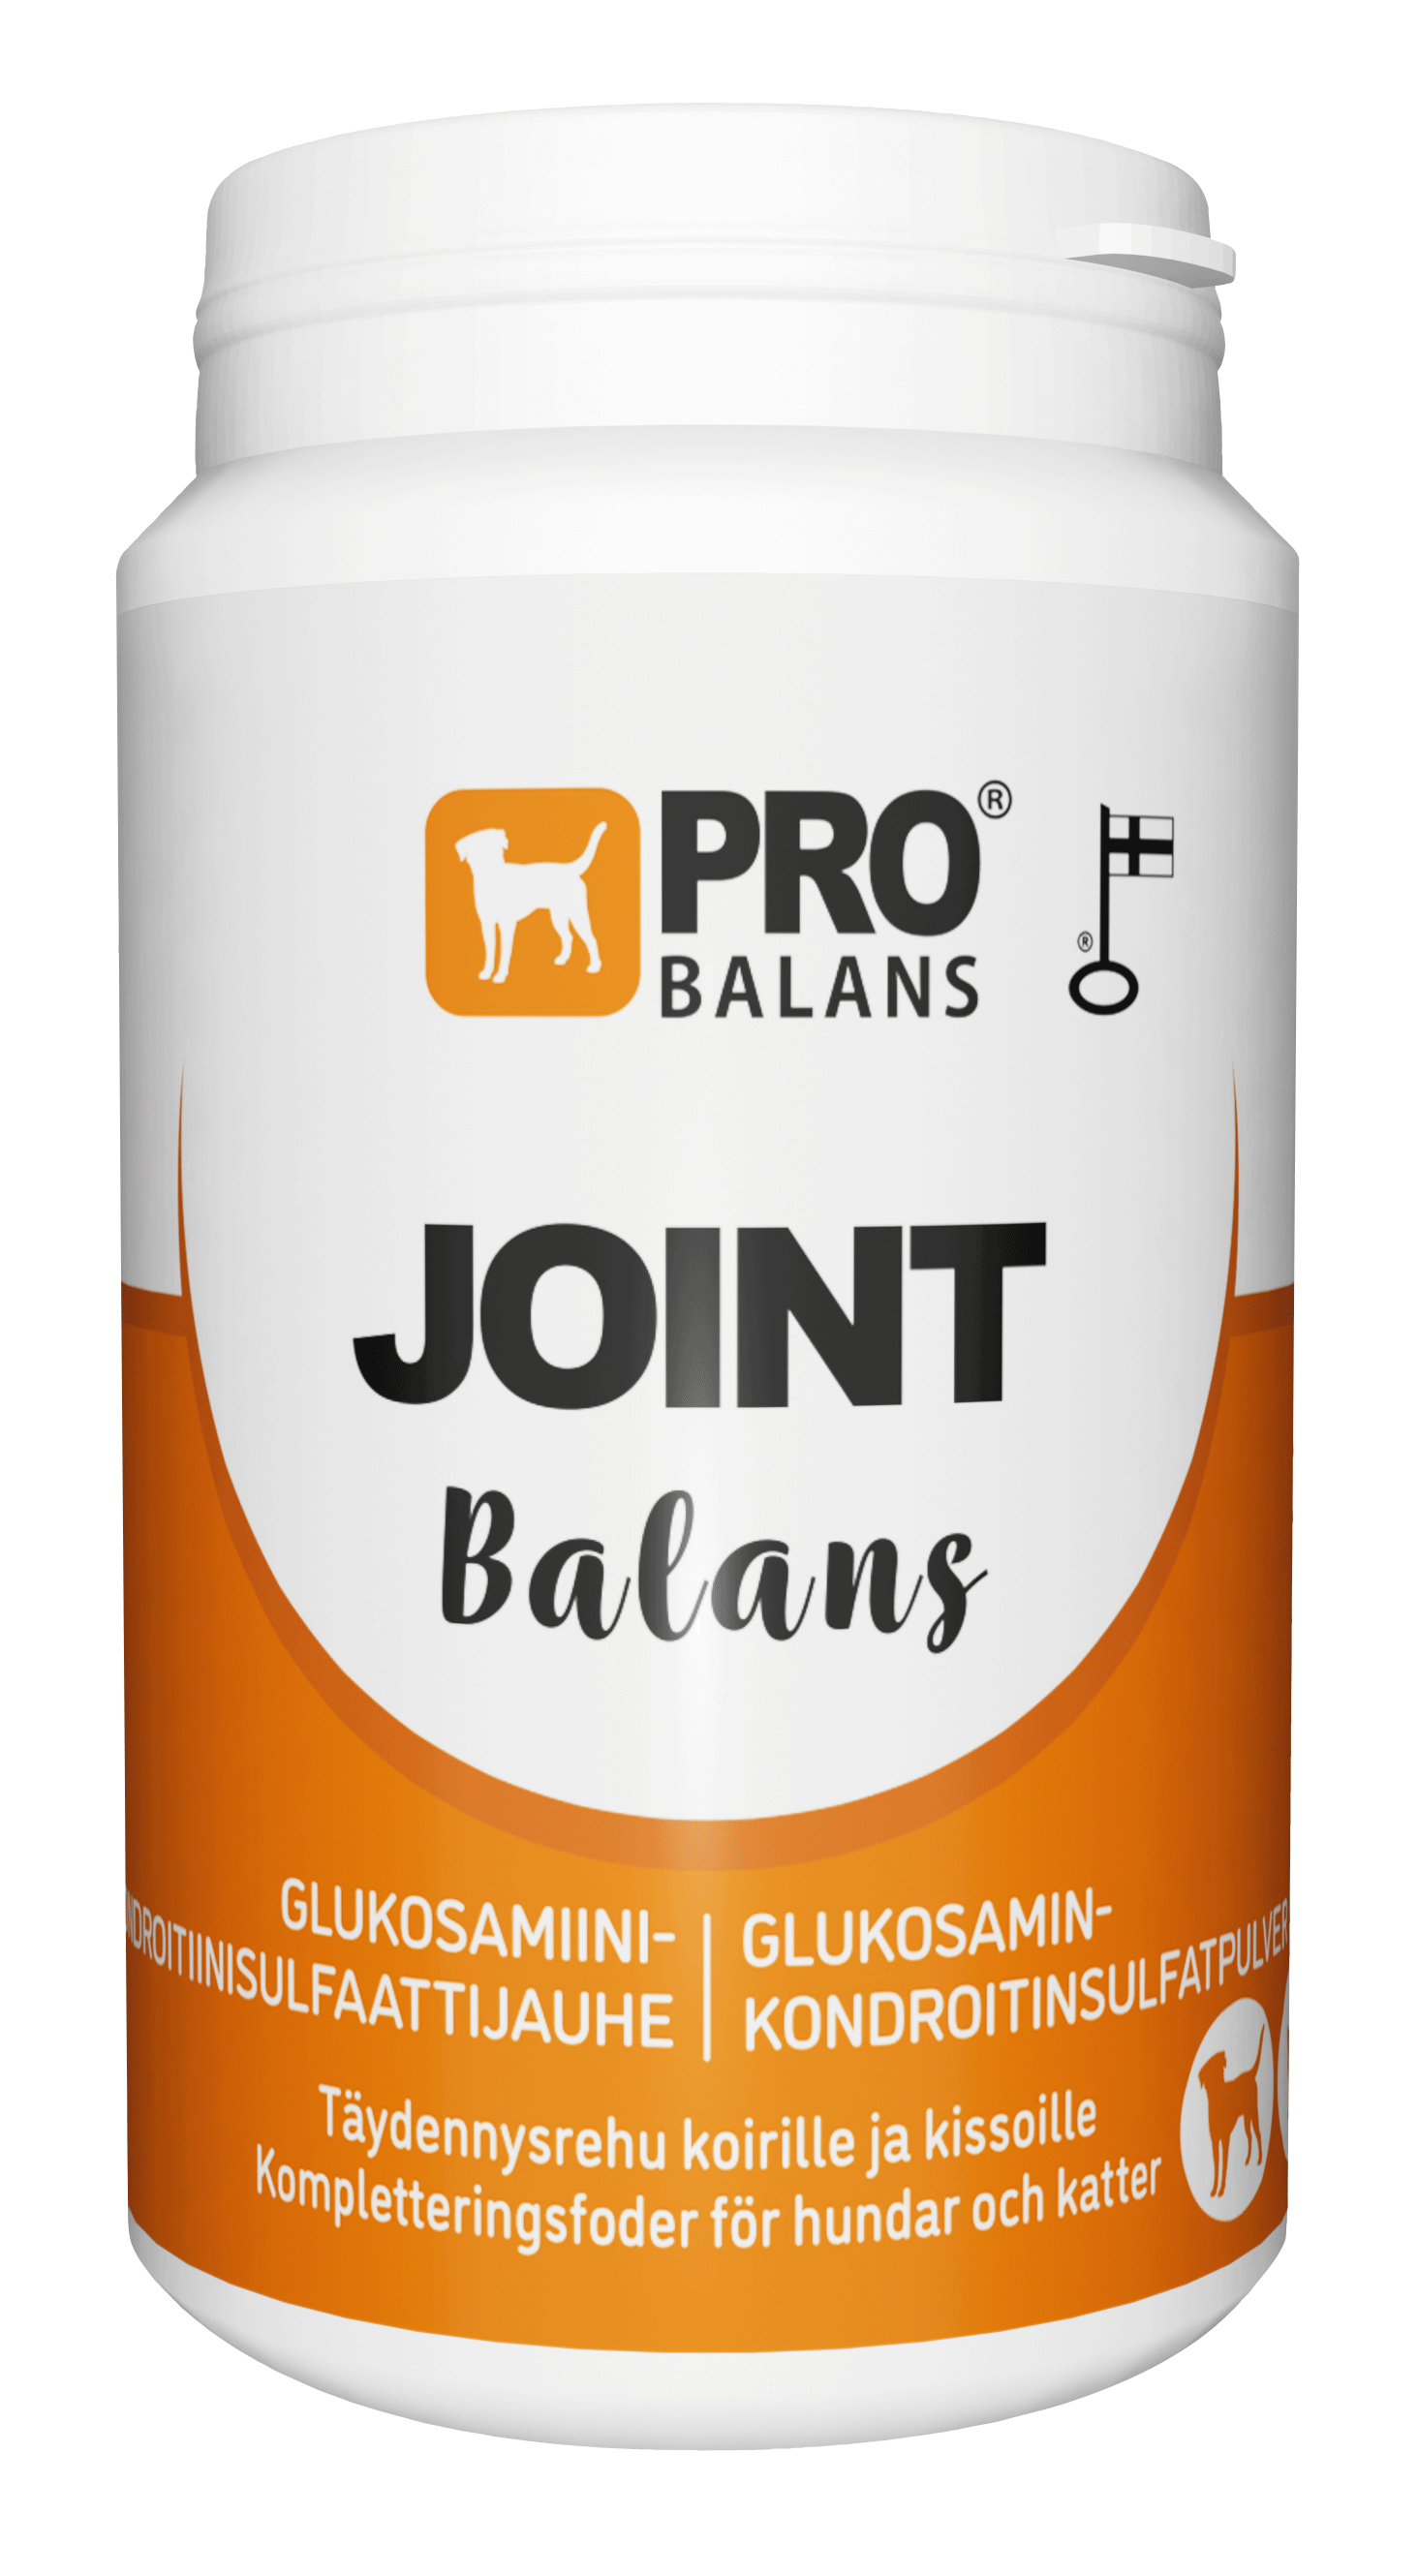 Probalans Joint Balans - Glukosamiini- ja kondroitiinisulfaattijauhe koirille 180 g